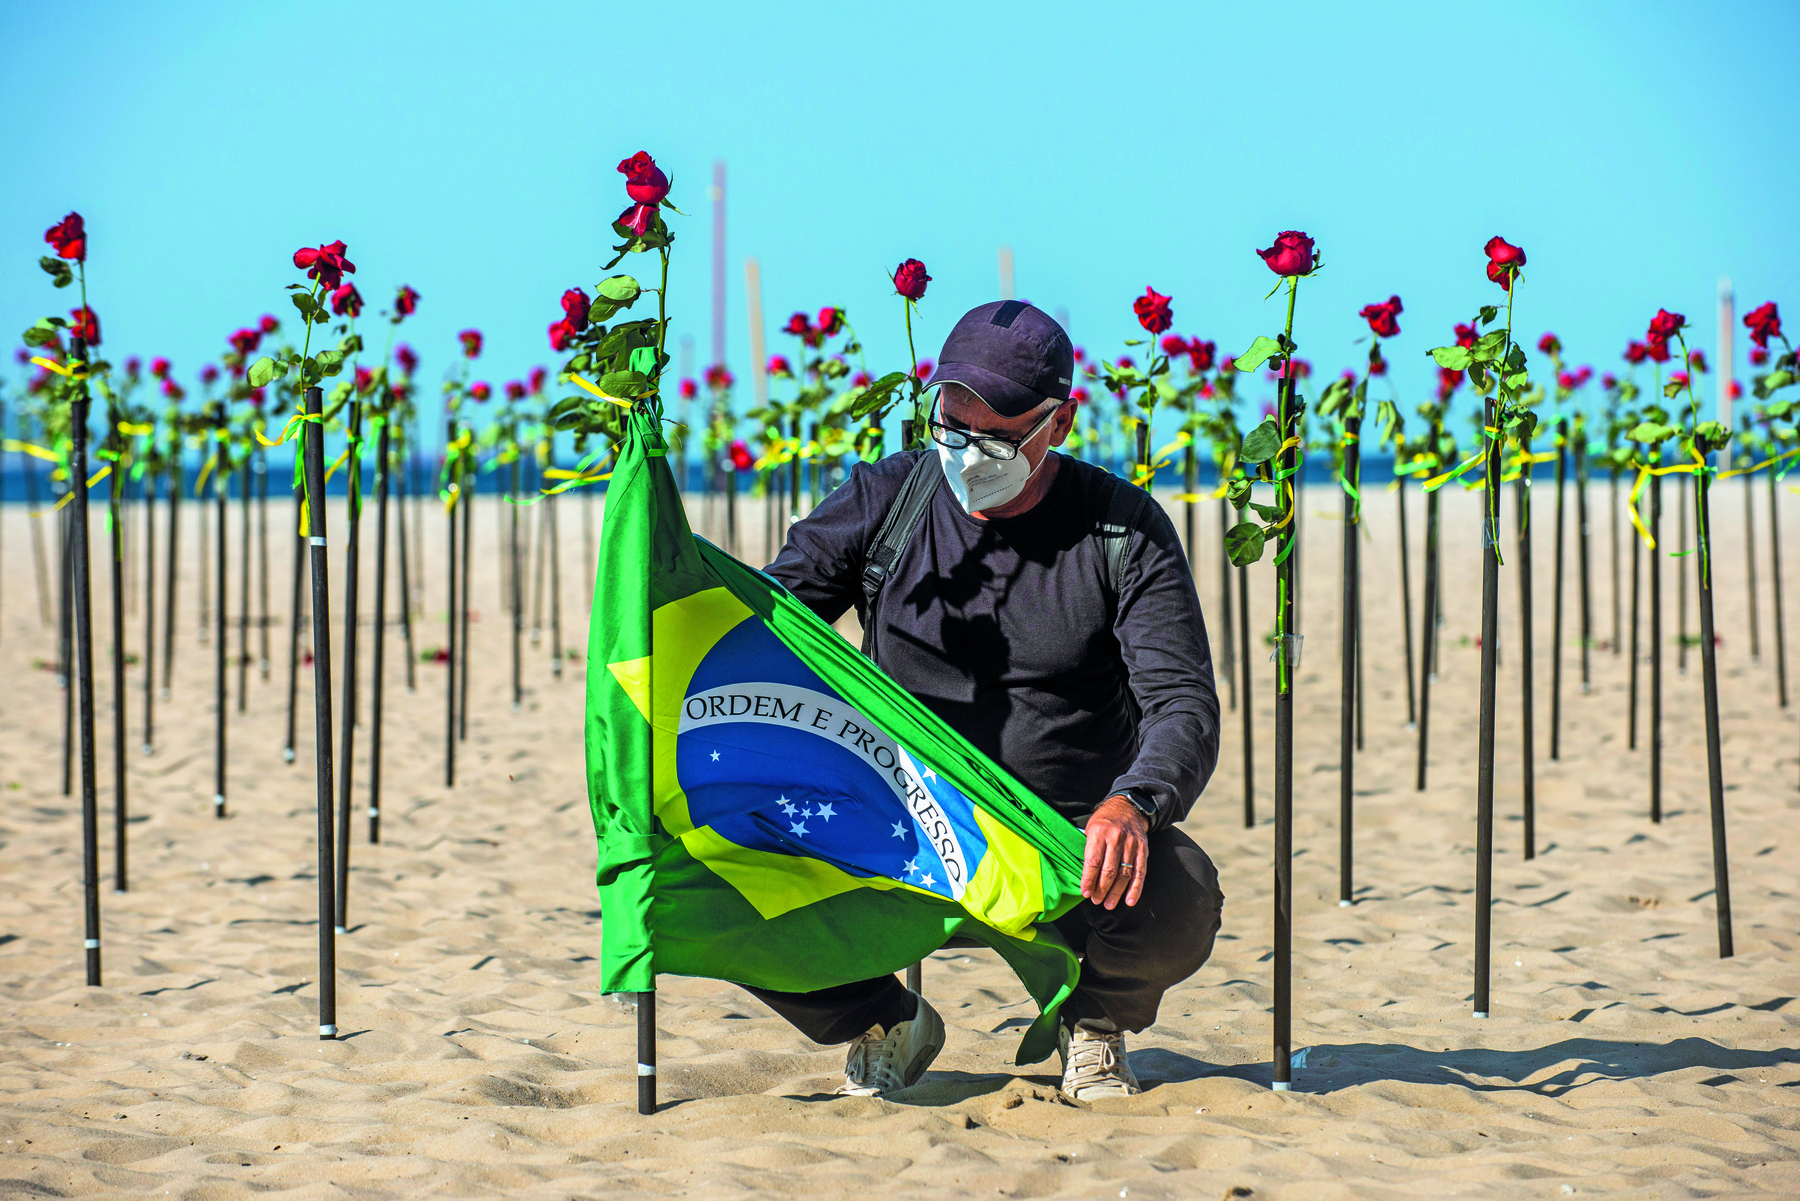 Fotografia. Um homem prende a bandeira do Brasil em uma estaca fincada na areia da praia. Ele usa boné e roupas escuras, e máscara de proteção facial. Atrás dele, dezenas de rosas em estacas encaixadas na areia.